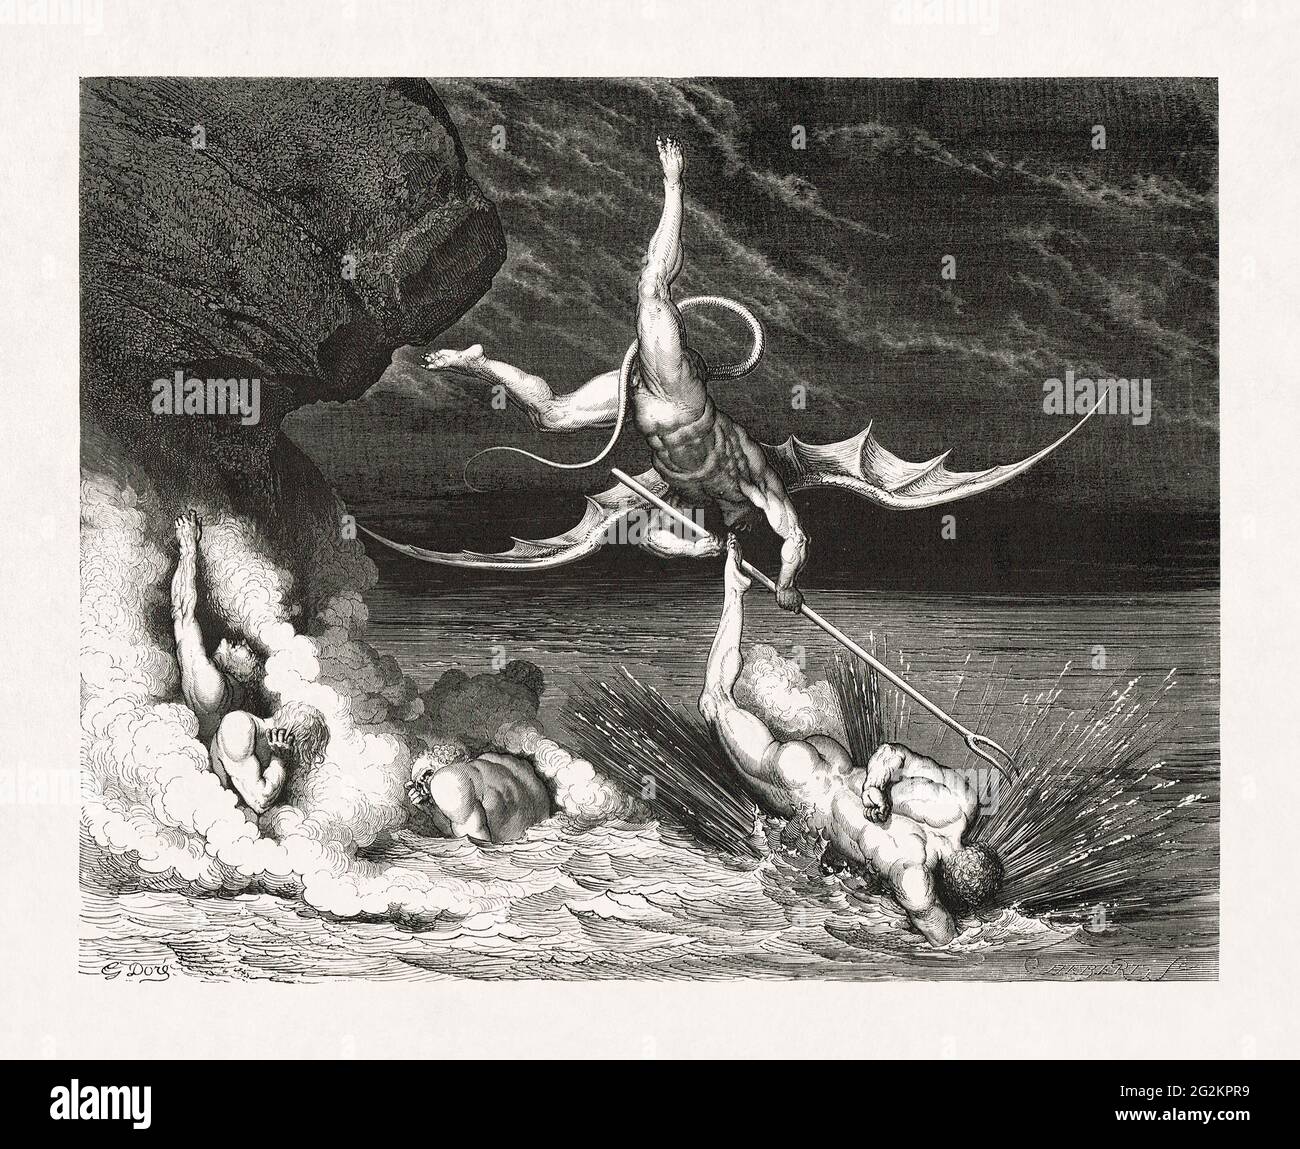 Disegno di Ciampolo in fuga dal demone Alichino realizzato nel 1857 da Gustave Doré per illustrare una nuova edizione delle poesie epiche di Dante Alighieri originale Foto Stock